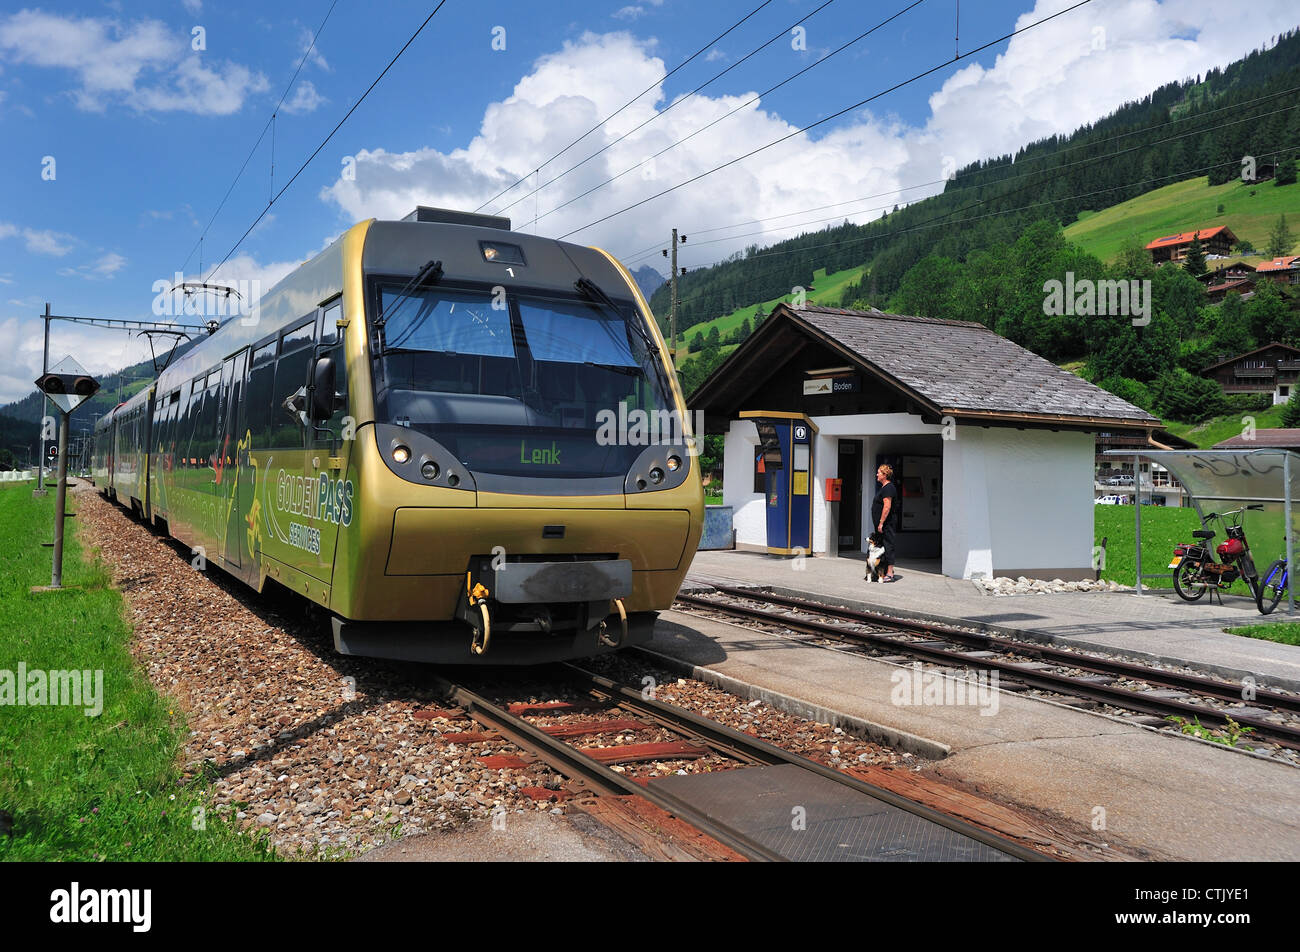 L'arrivée d'un train local à Boden, dans la vallée de la Simme, Suisse Banque D'Images